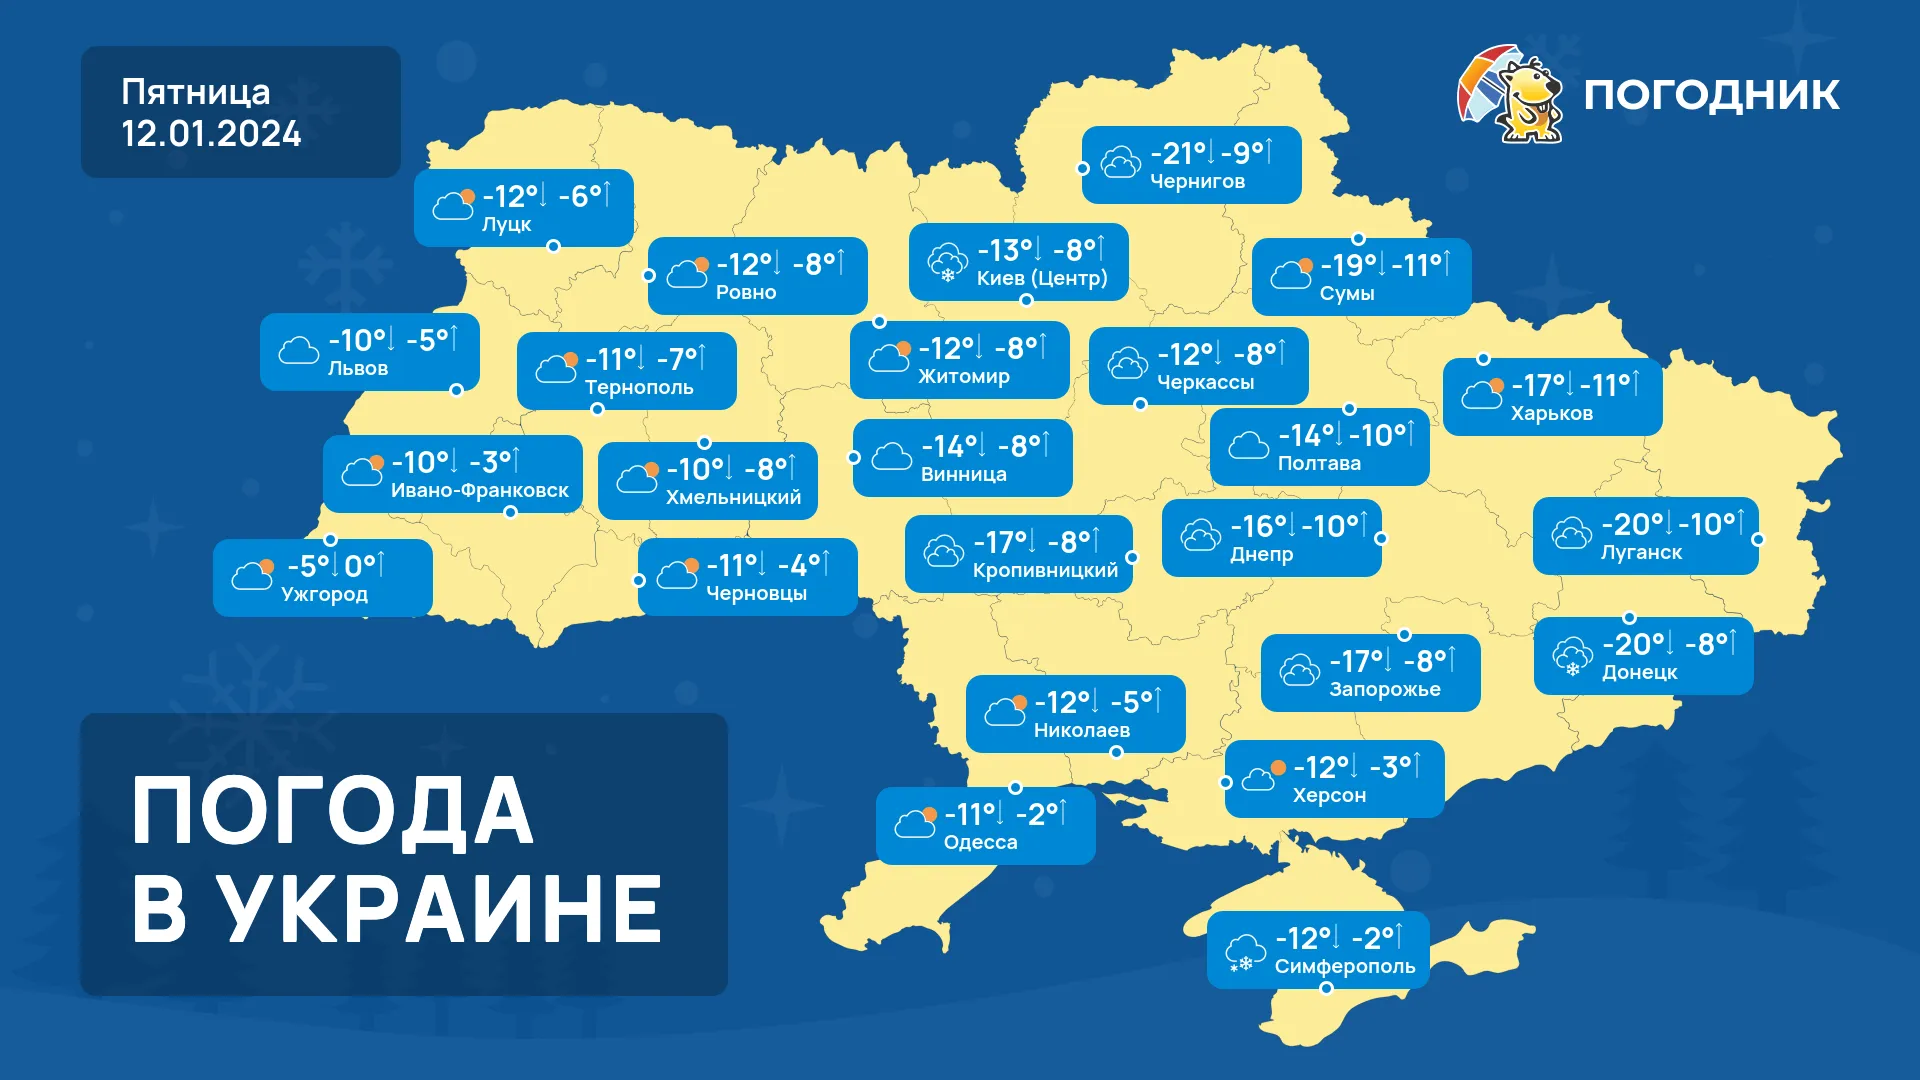 Погода в Украине - ледяной дождь и гололёд. Погода на три дня 10-12 января.